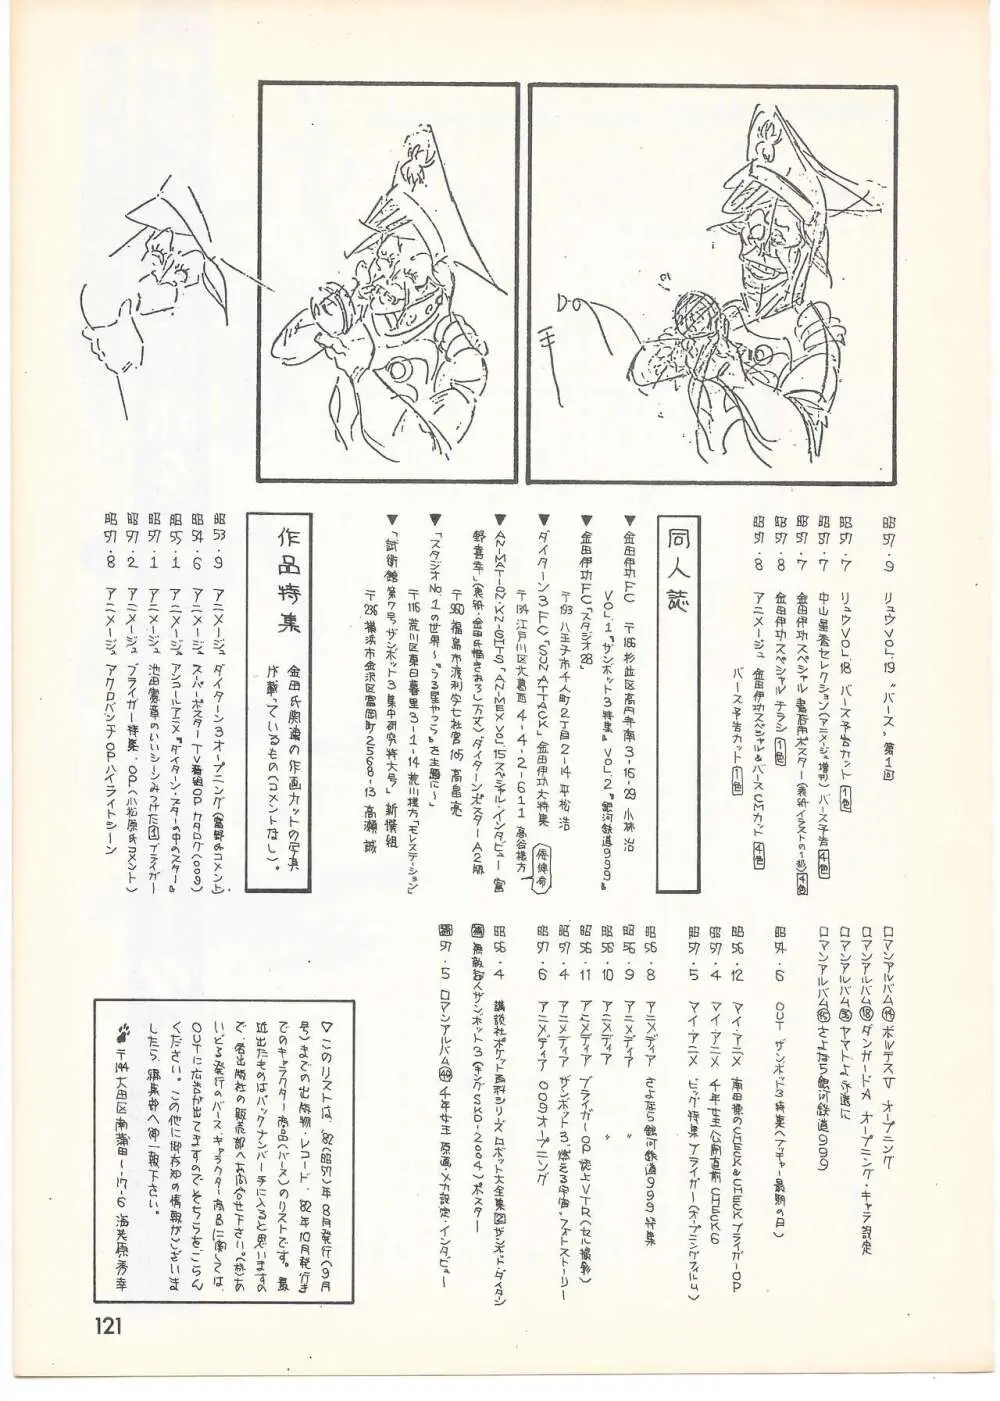 THE ANIMATOR 1 金田伊功特集号 116ページ